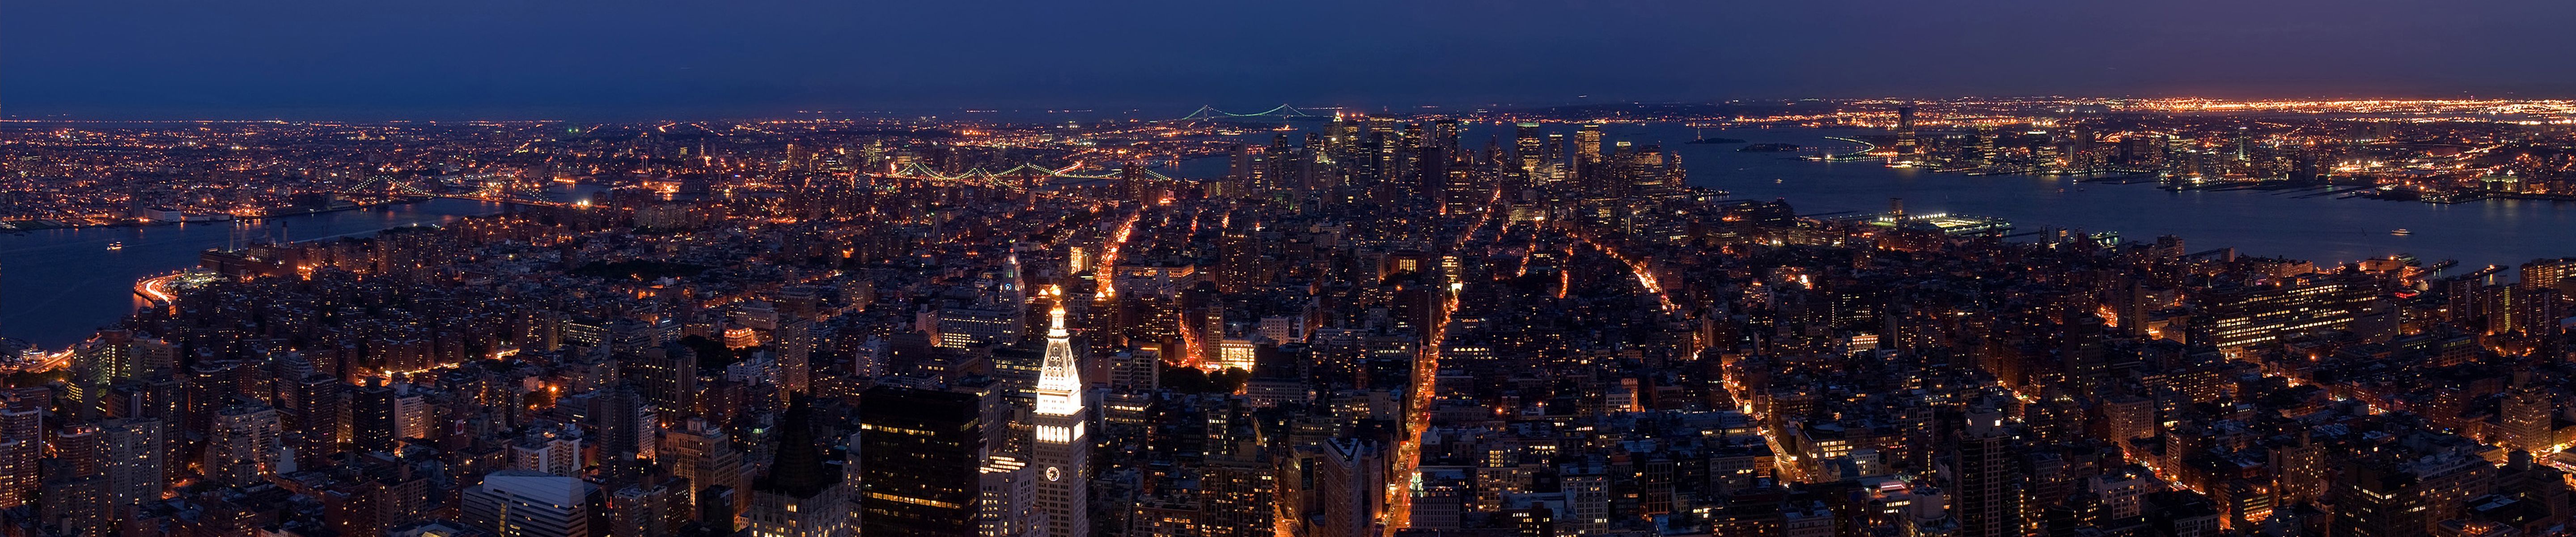 Wallpaper New York Manhattan night panoramic – Triple monitor ...